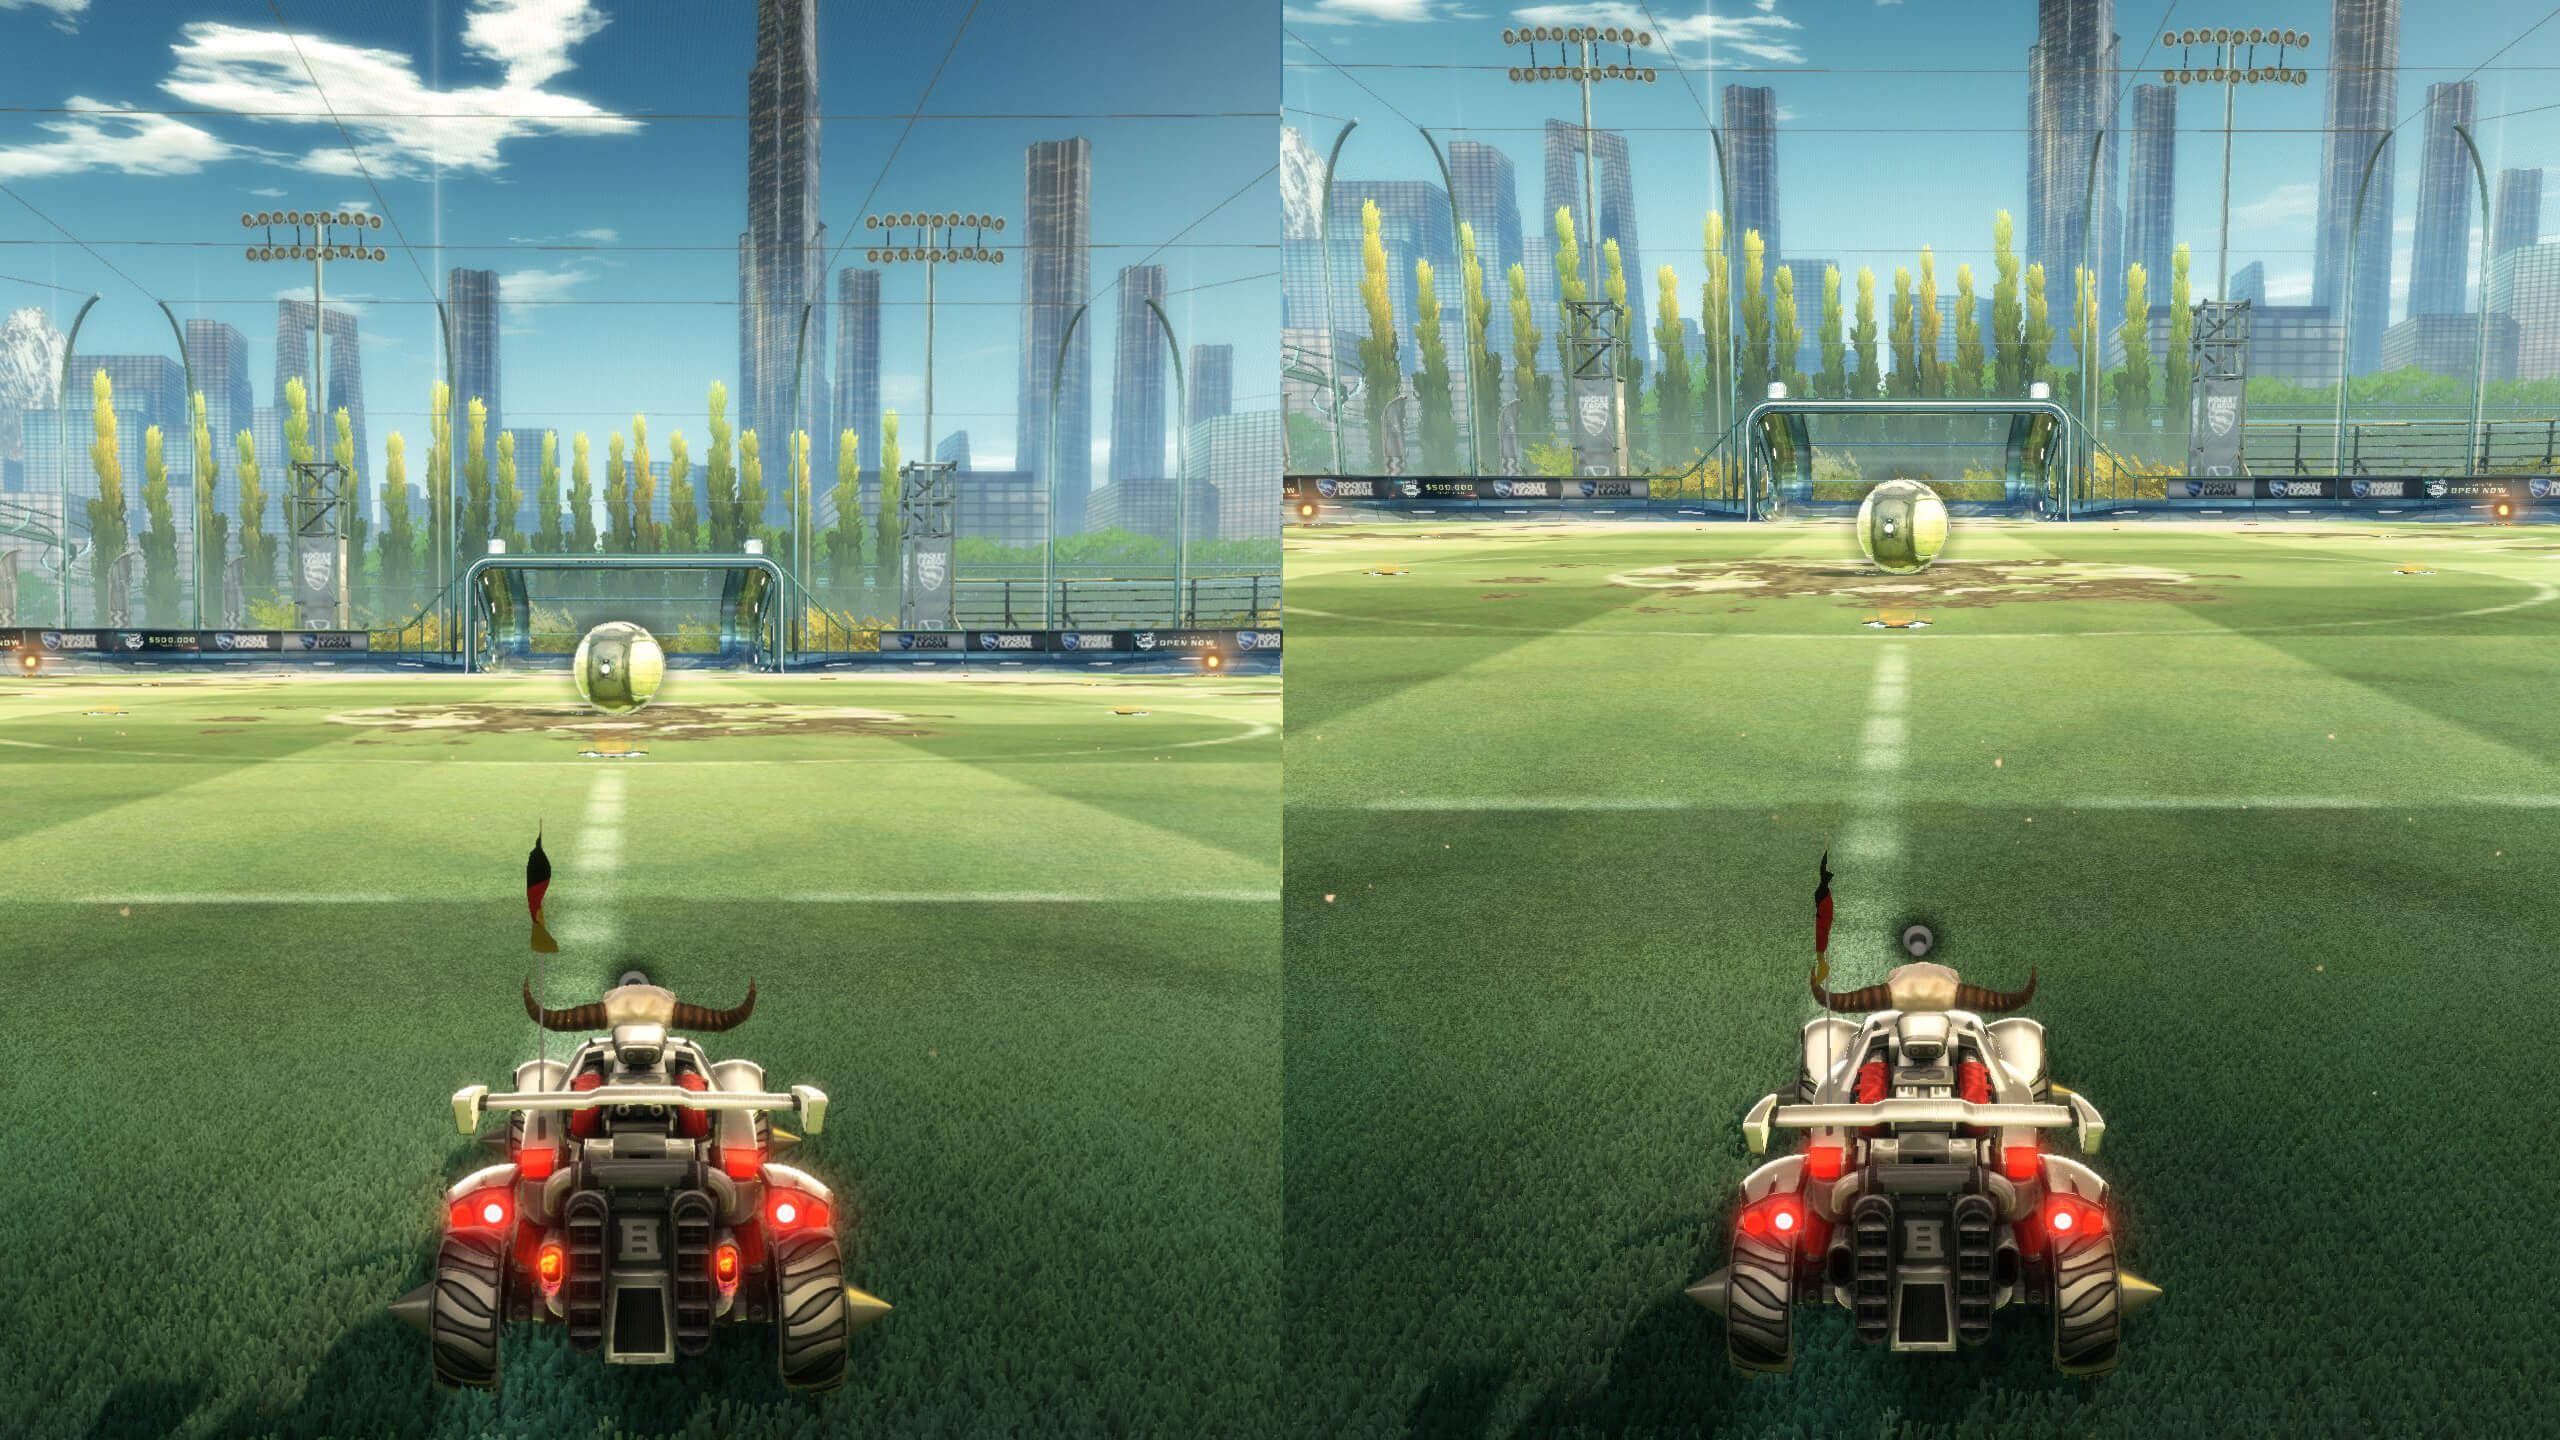 camera-angle-comparison